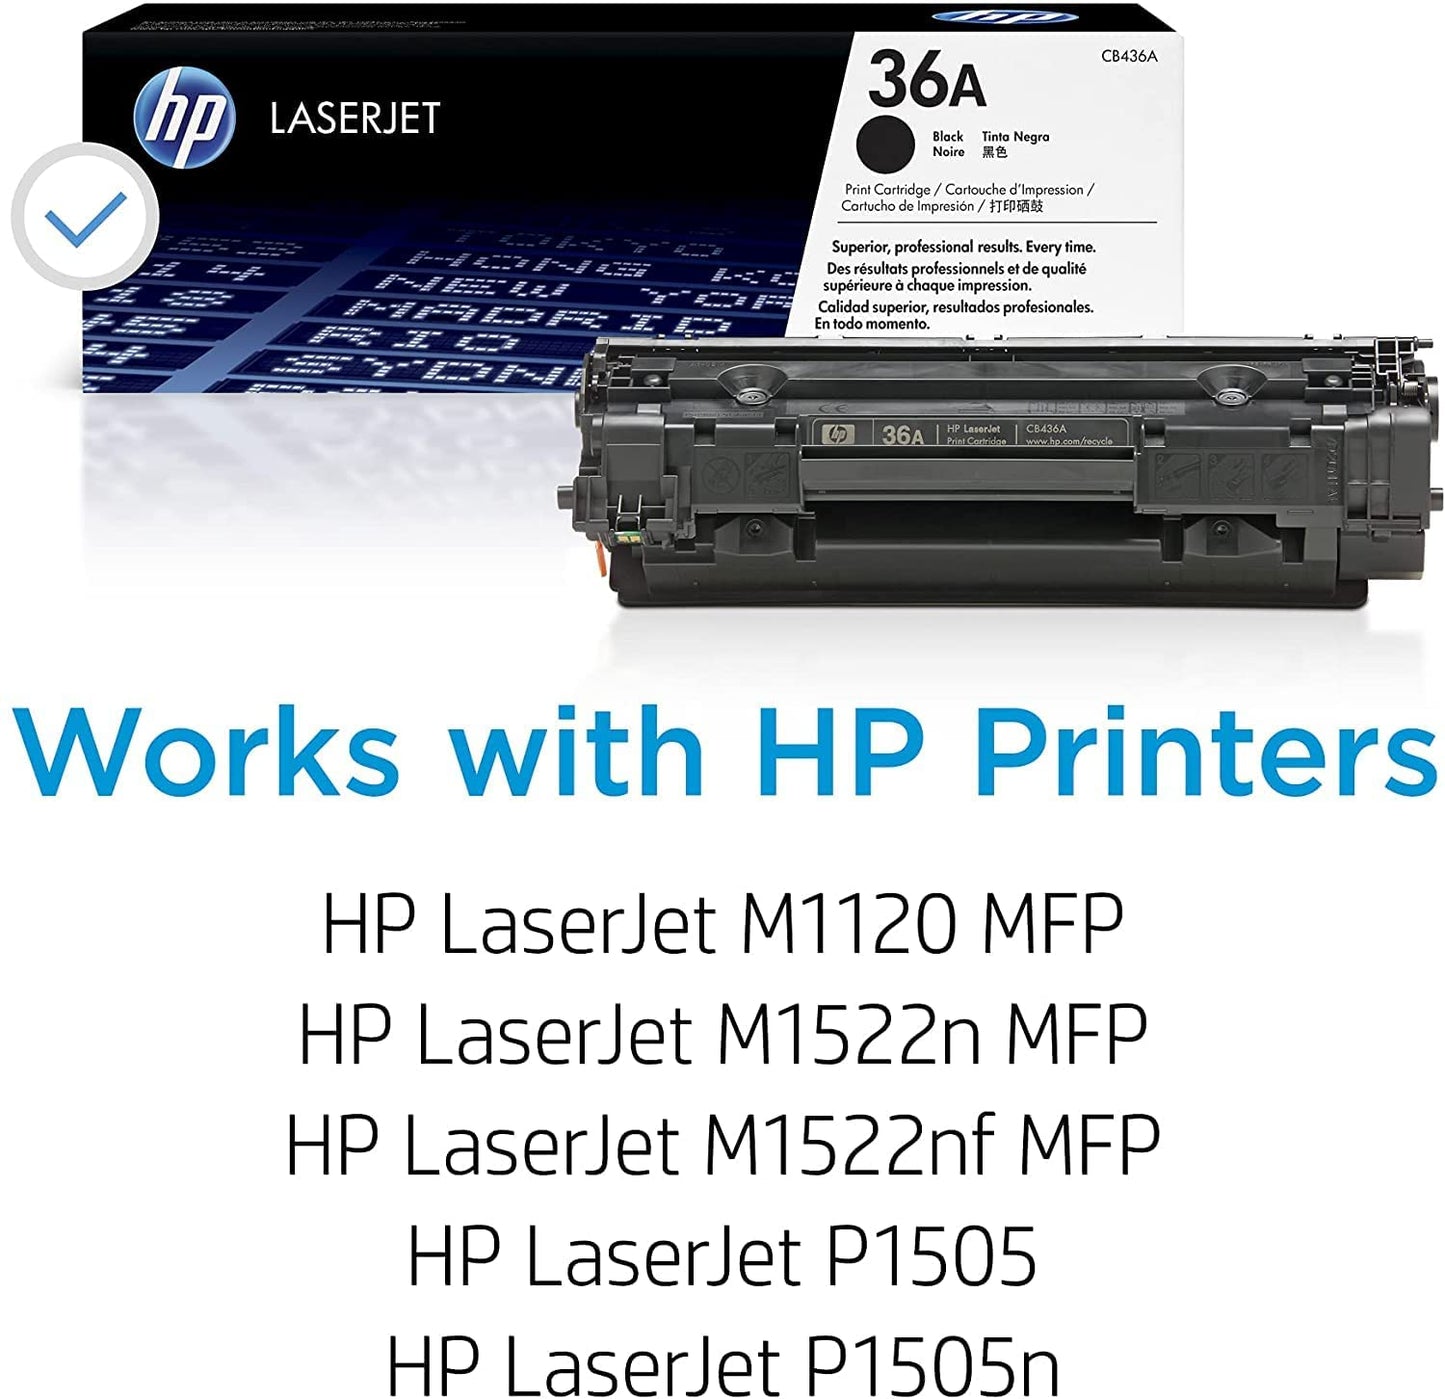 Cartucho de toner original LaserJet para impresoras HP LaserJet M1120, M1522, P1505. Color negro. 36A CB436A